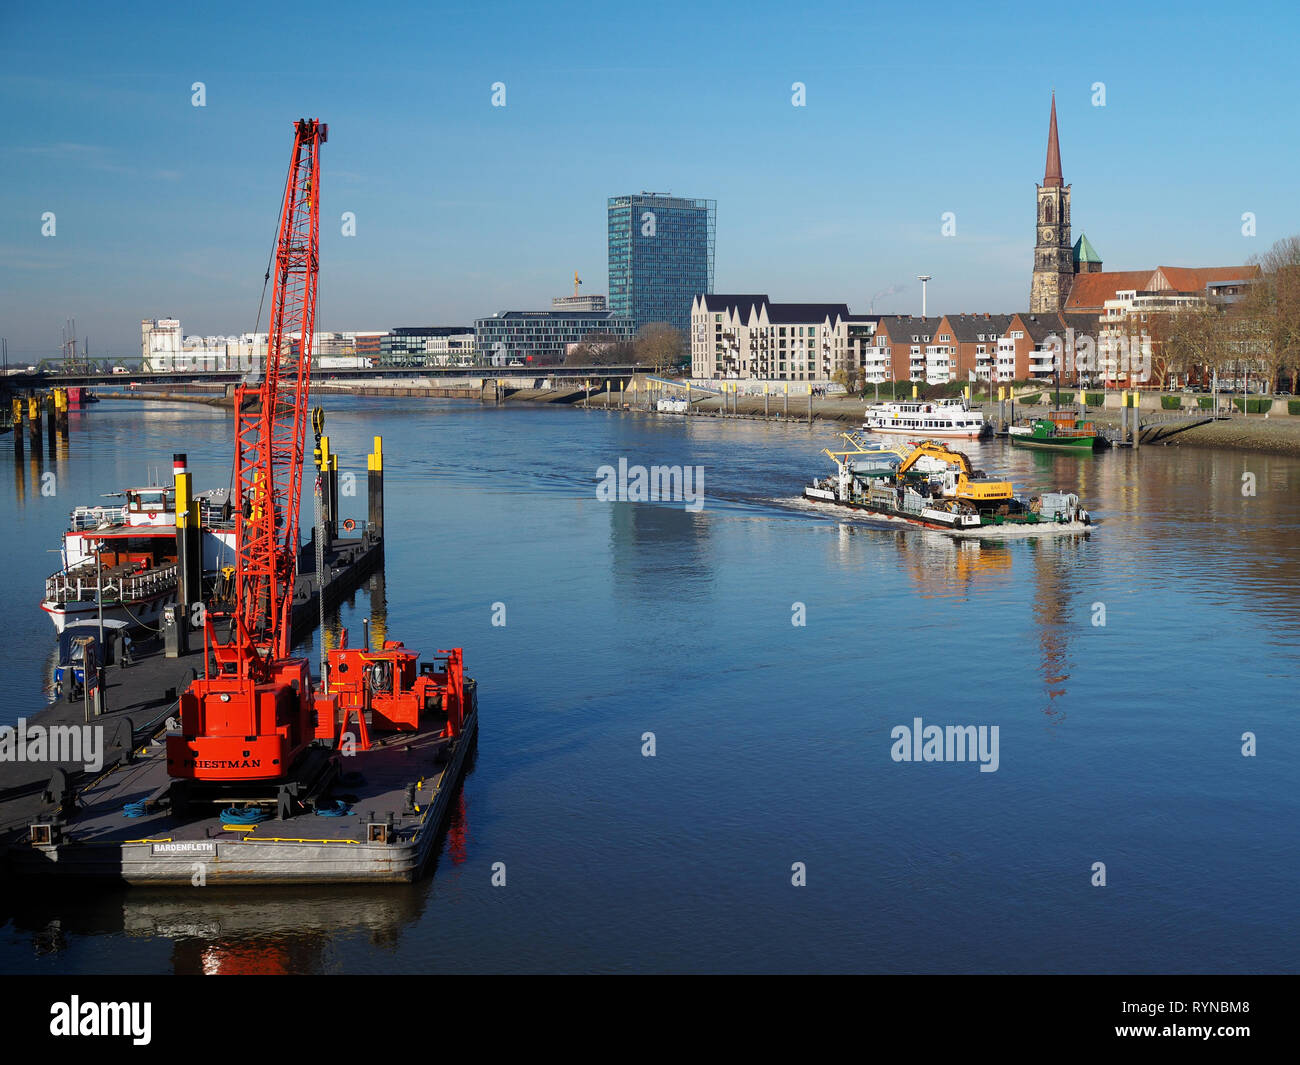 Bremen, Germania - Febbraio 14th, 2019 - Pier con diverse navi di piccole dimensioni e di colore rosso brillante gru galleggiante, chiatta con draghe e dello skyline della città con Weser Foto Stock